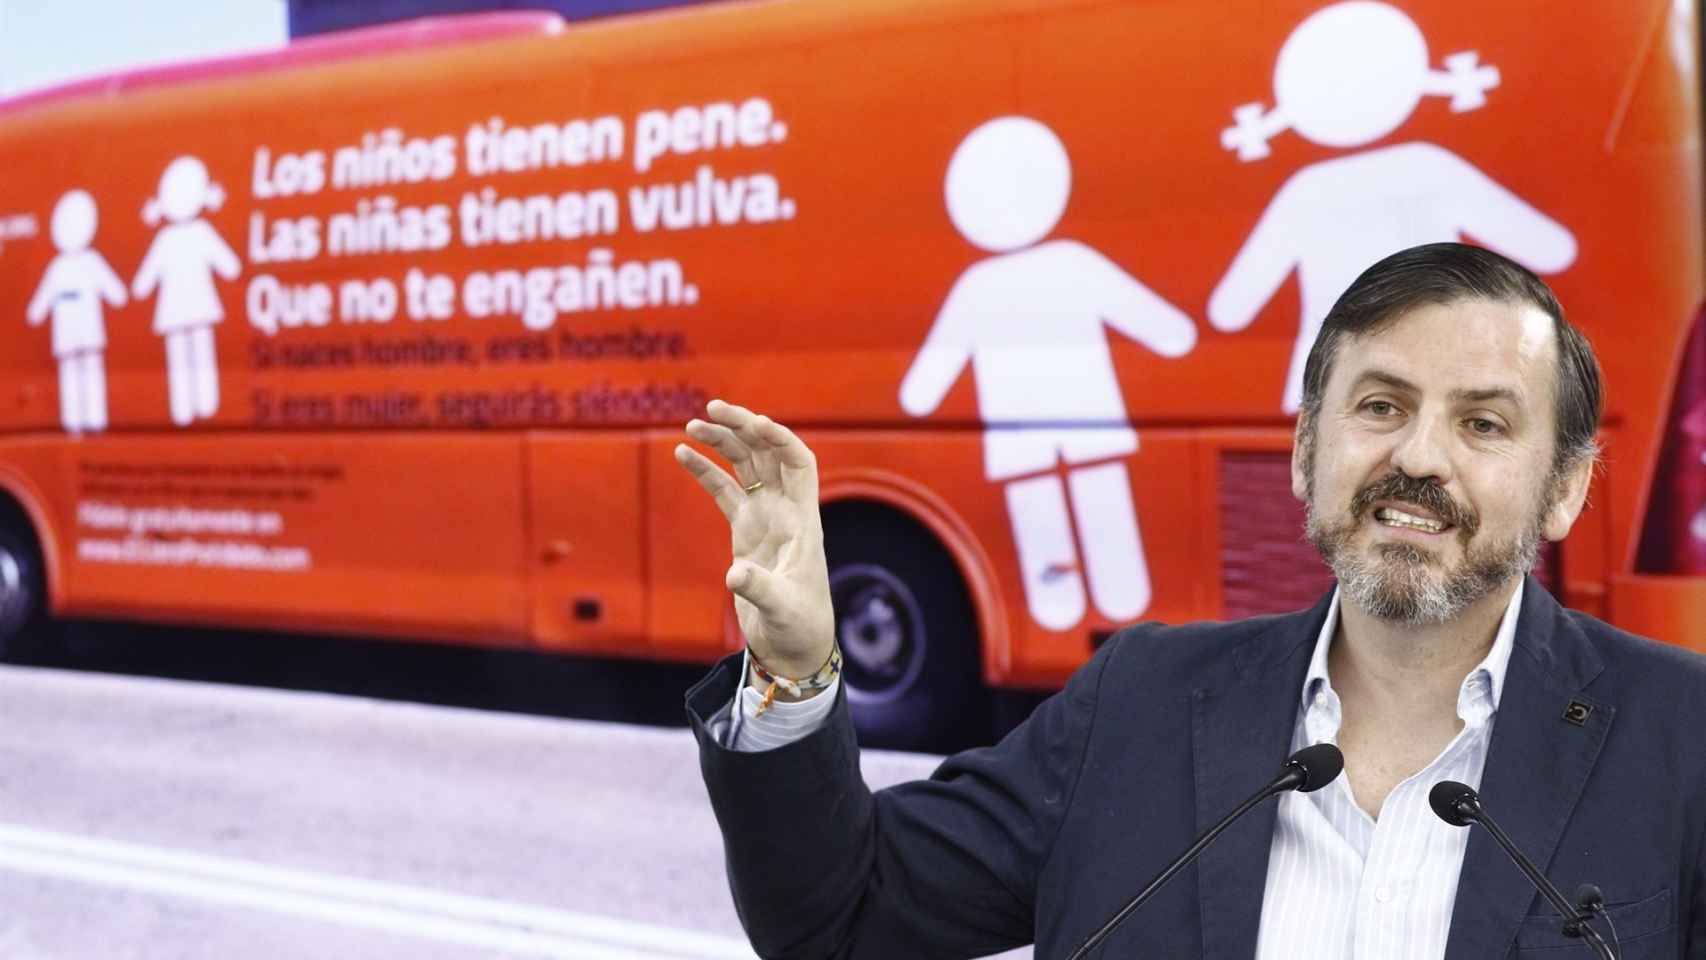 Ignacio Arsuaga con el polémico autobús de HazteOír.